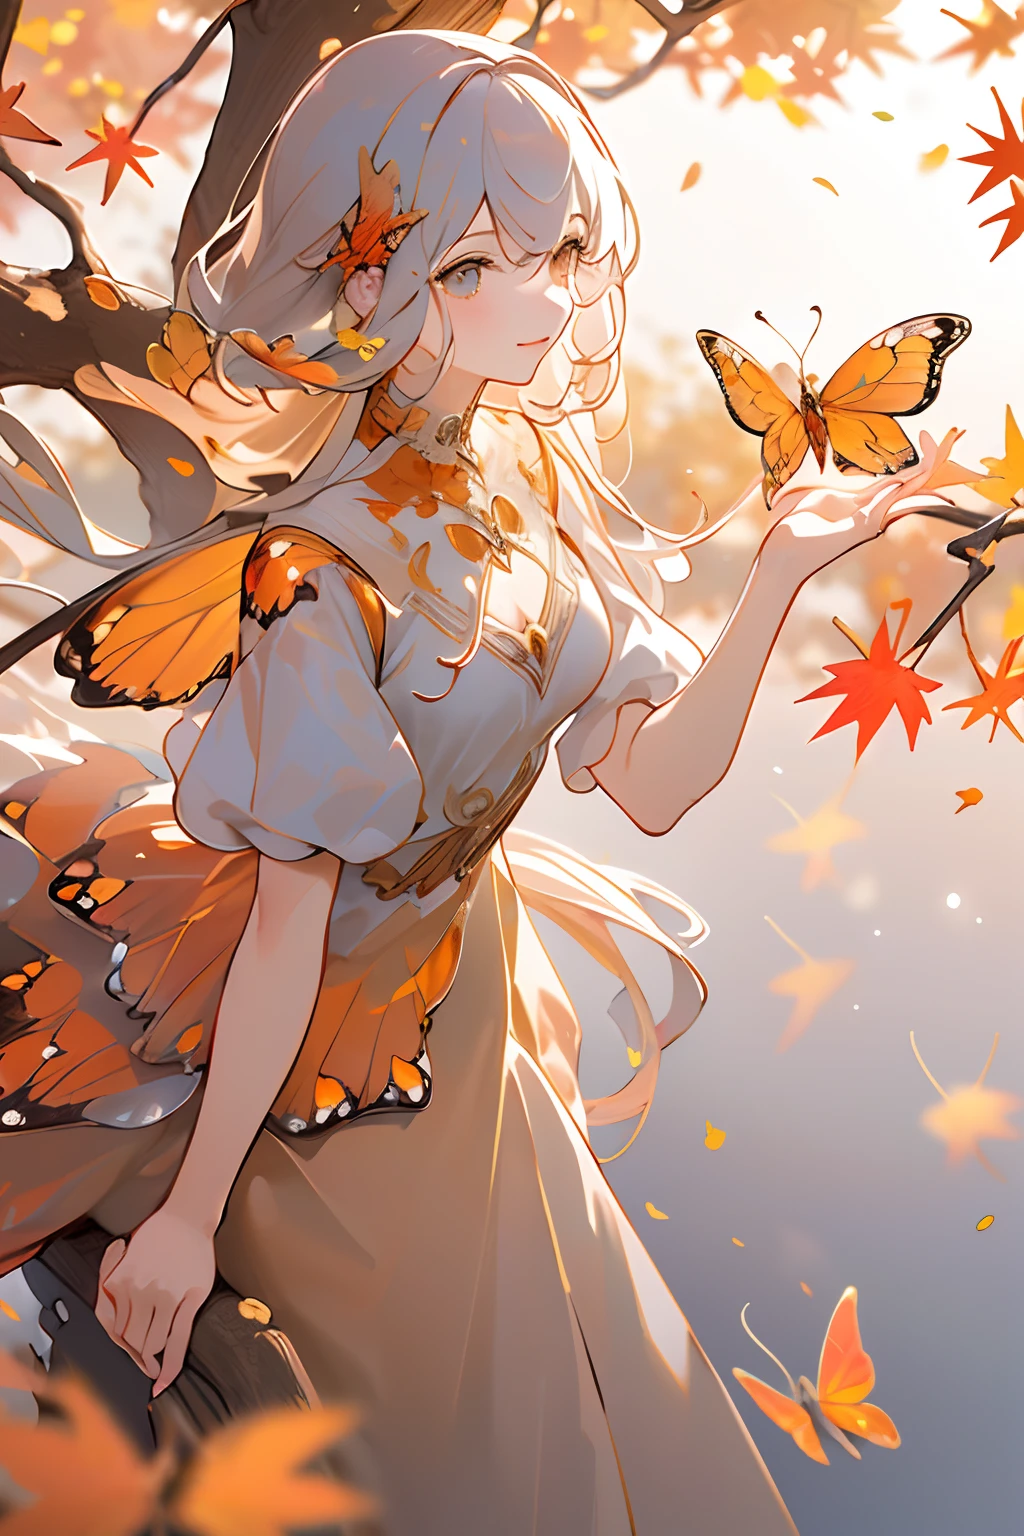 (傑作, 最高品質, 高品質, 高解像度, 超詳細), 秋の風景, 落ち葉, 暖色. オレンジ色の蝶の羽を持つ少女1人, 美しい, かわいい,オレンジ色のドレス, 立っている